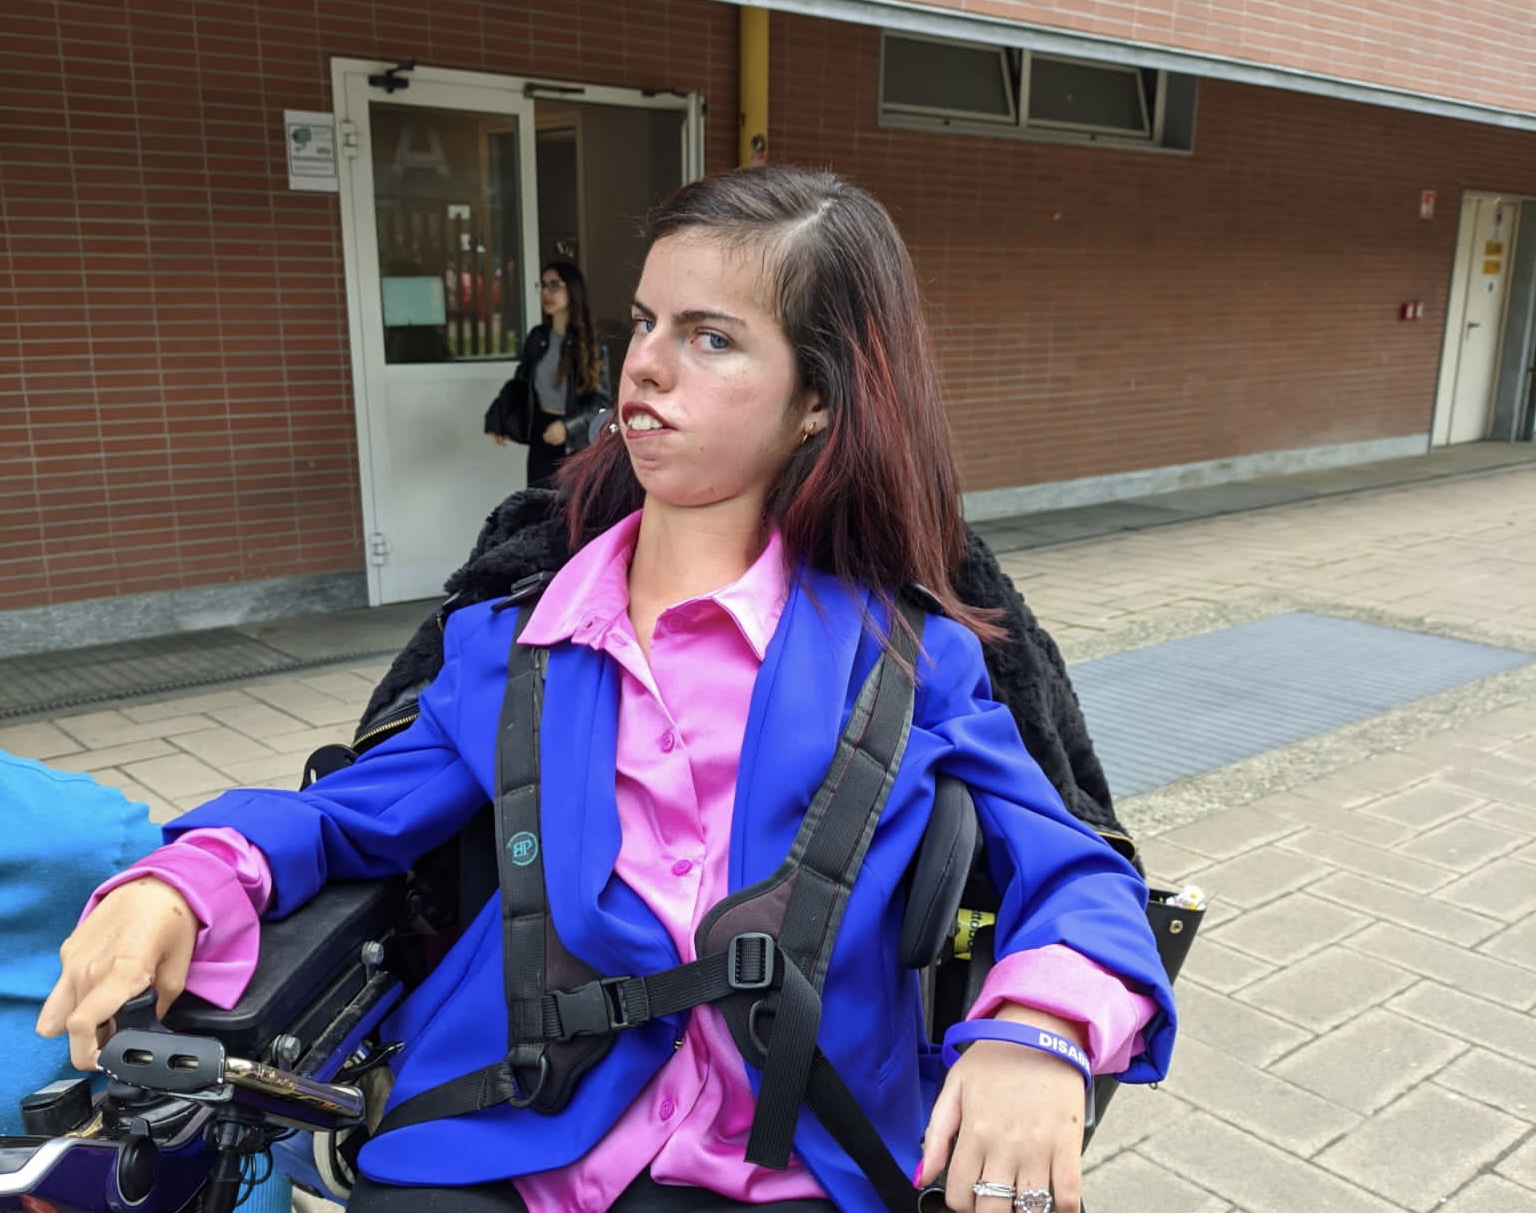 Elisa Costantino seduta su una carrozzina, all'esterno di un edificio, con una camicia rosa e una giacca blu